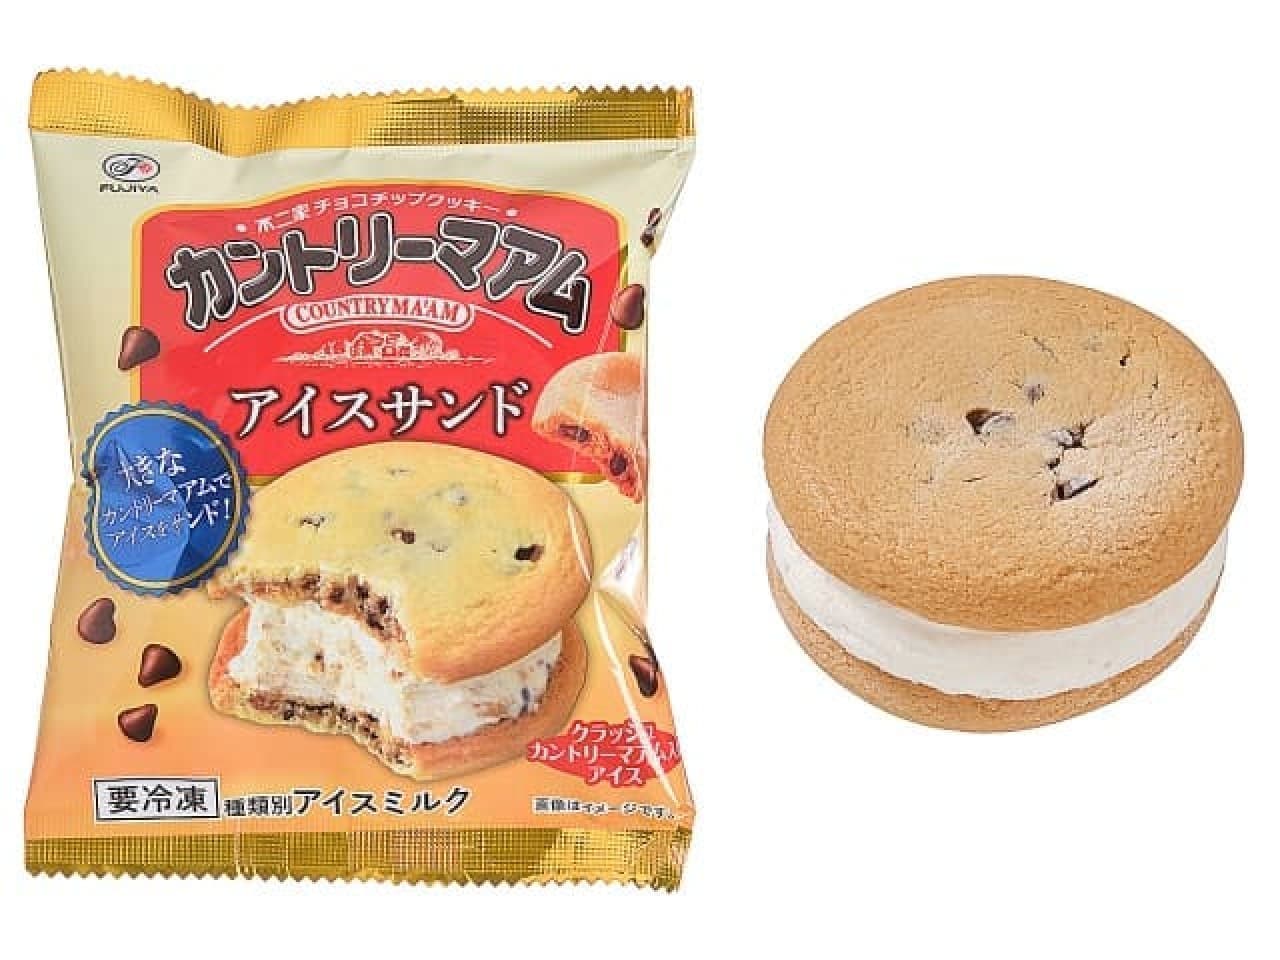 Fujiya Country Ma'am Ice Cream Sandwich